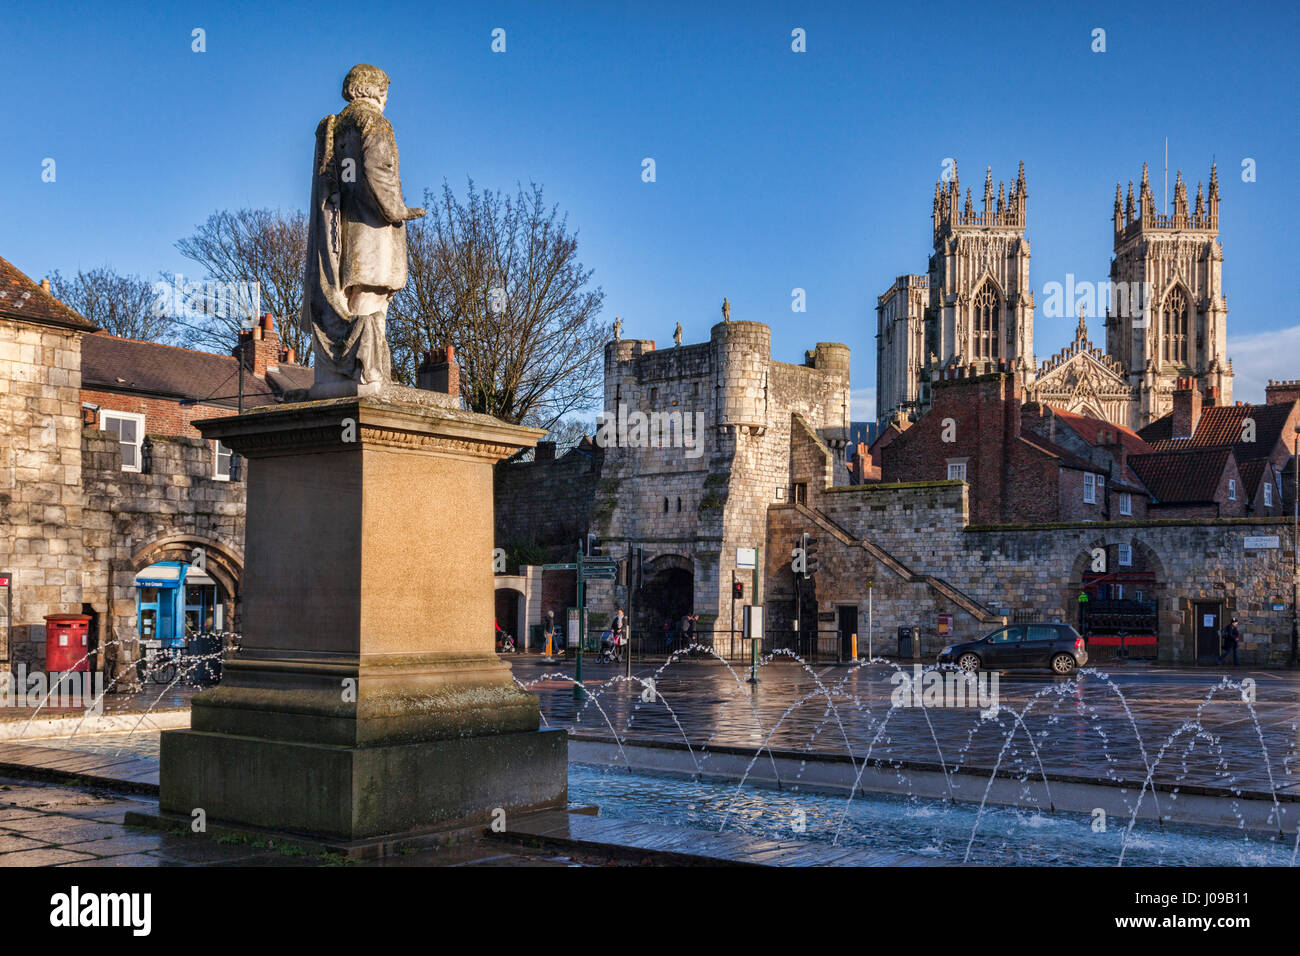 Une belle journée d'hiver de la ville de York, North Yorkshire, Angleterre, Royaume-Uni, 1911 et la statue de William Etty donne sur Monkgate et York Minster. Banque D'Images